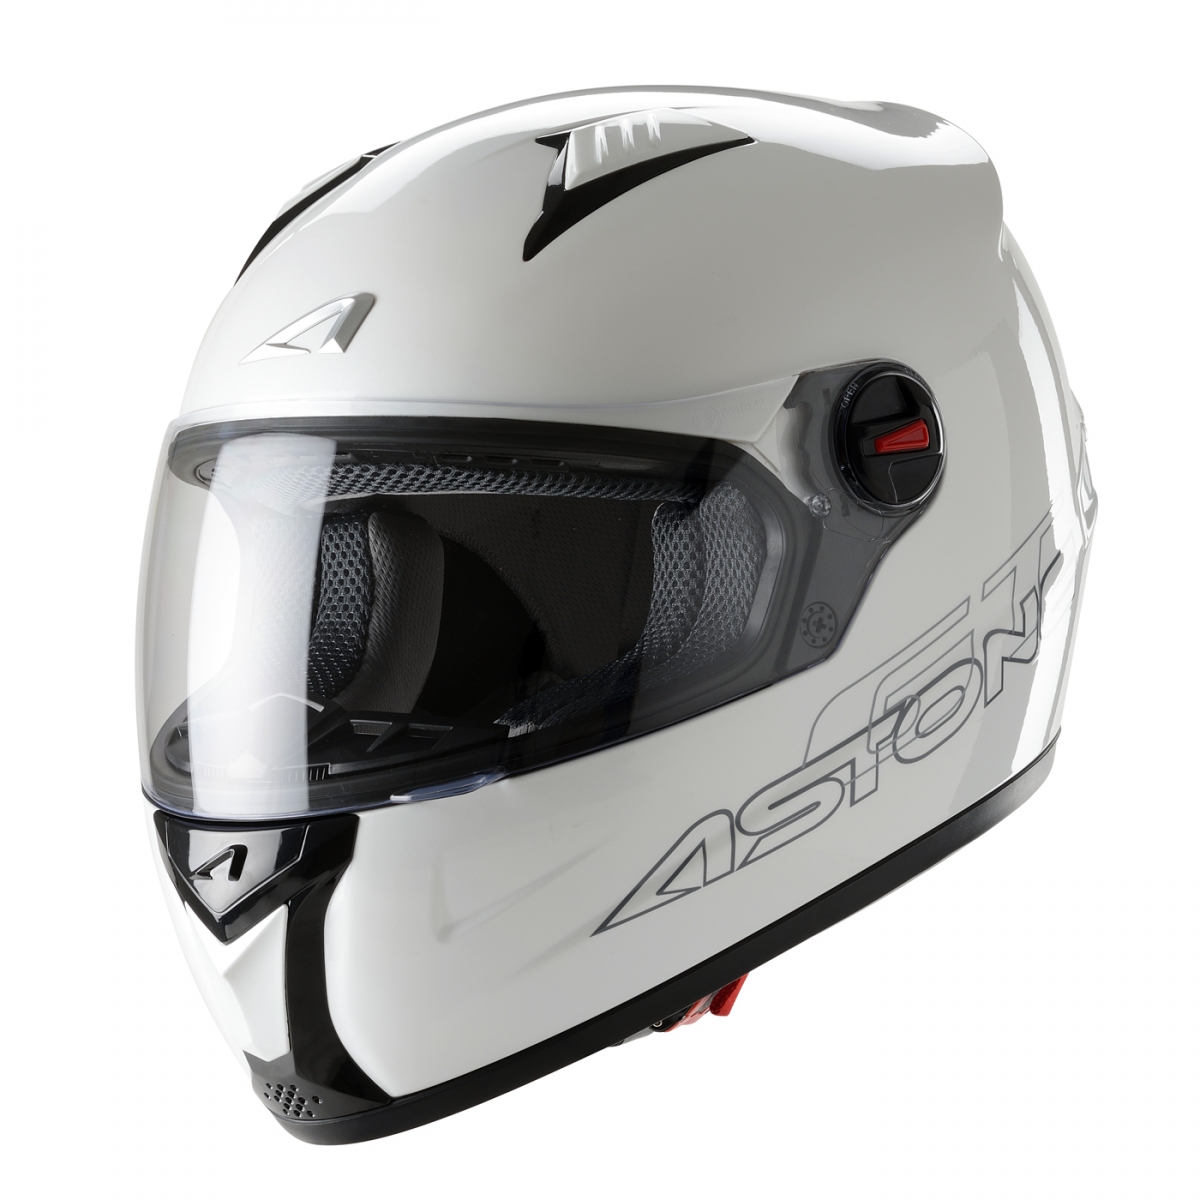 Французские шлемы ASTONE: у официальных дилеров STELS